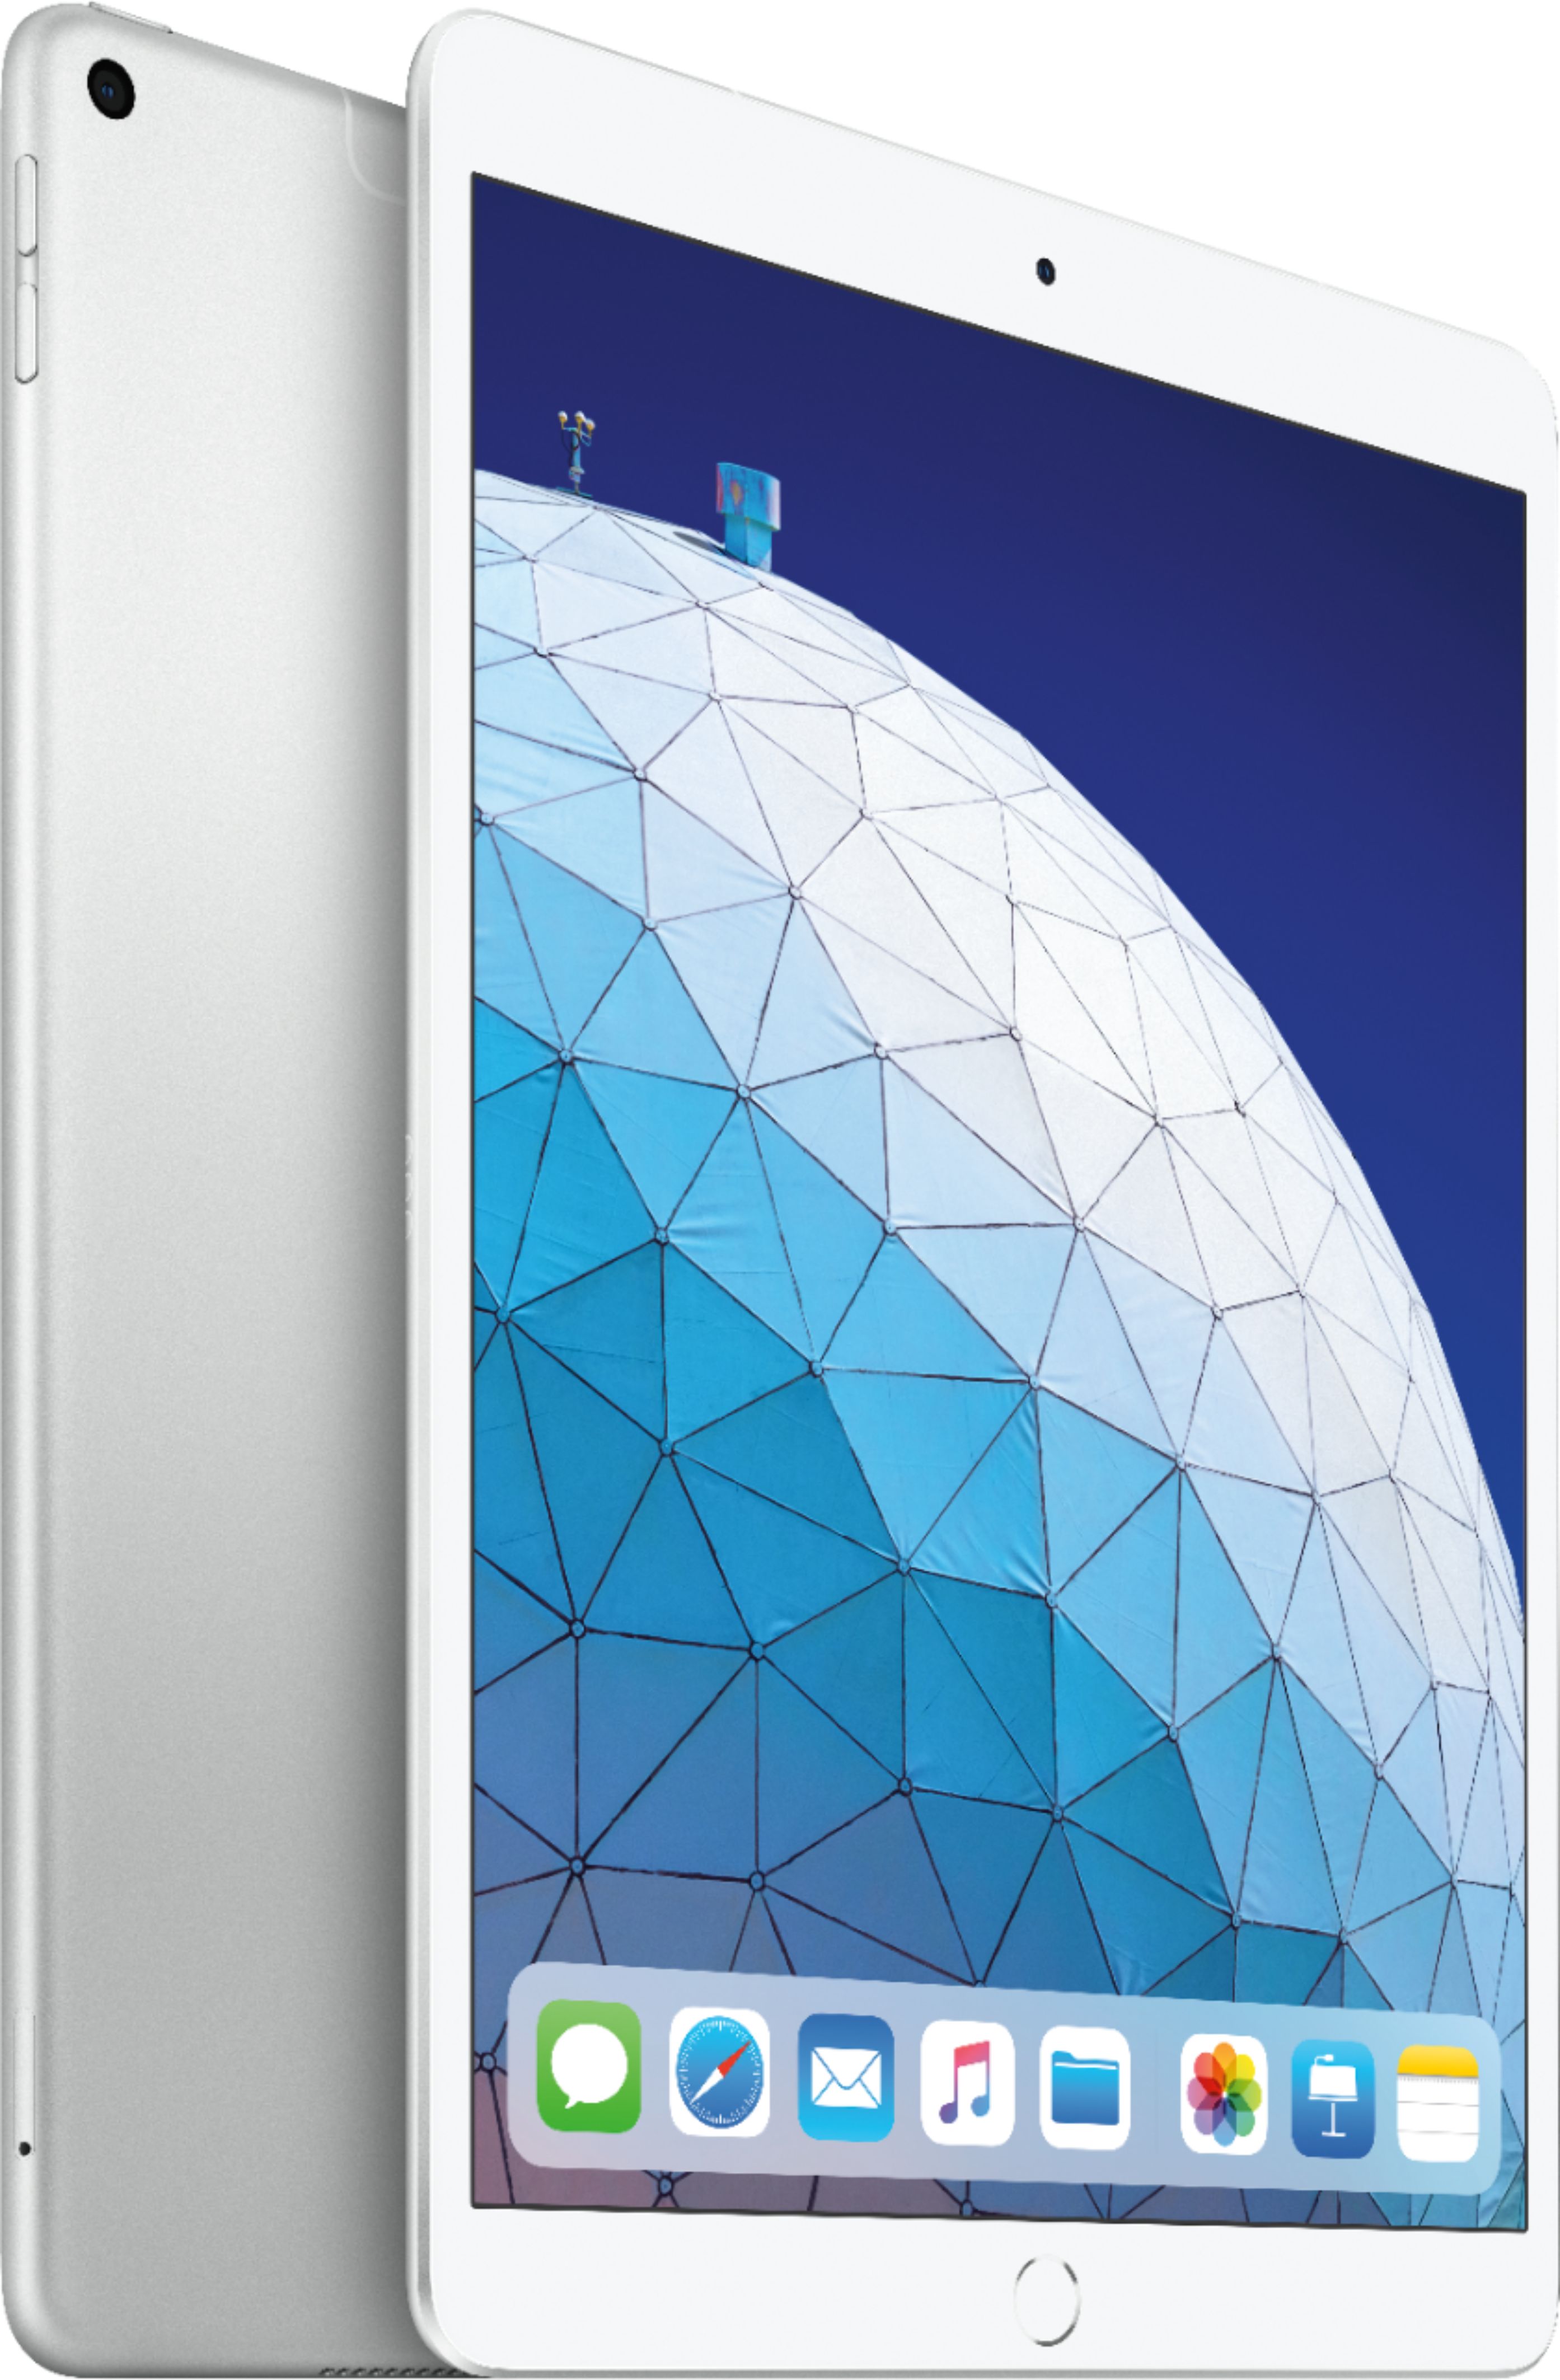 Best Buy: Apple iPad Air with Wi-Fi + Cellular 64GB Silver MV162LL/A